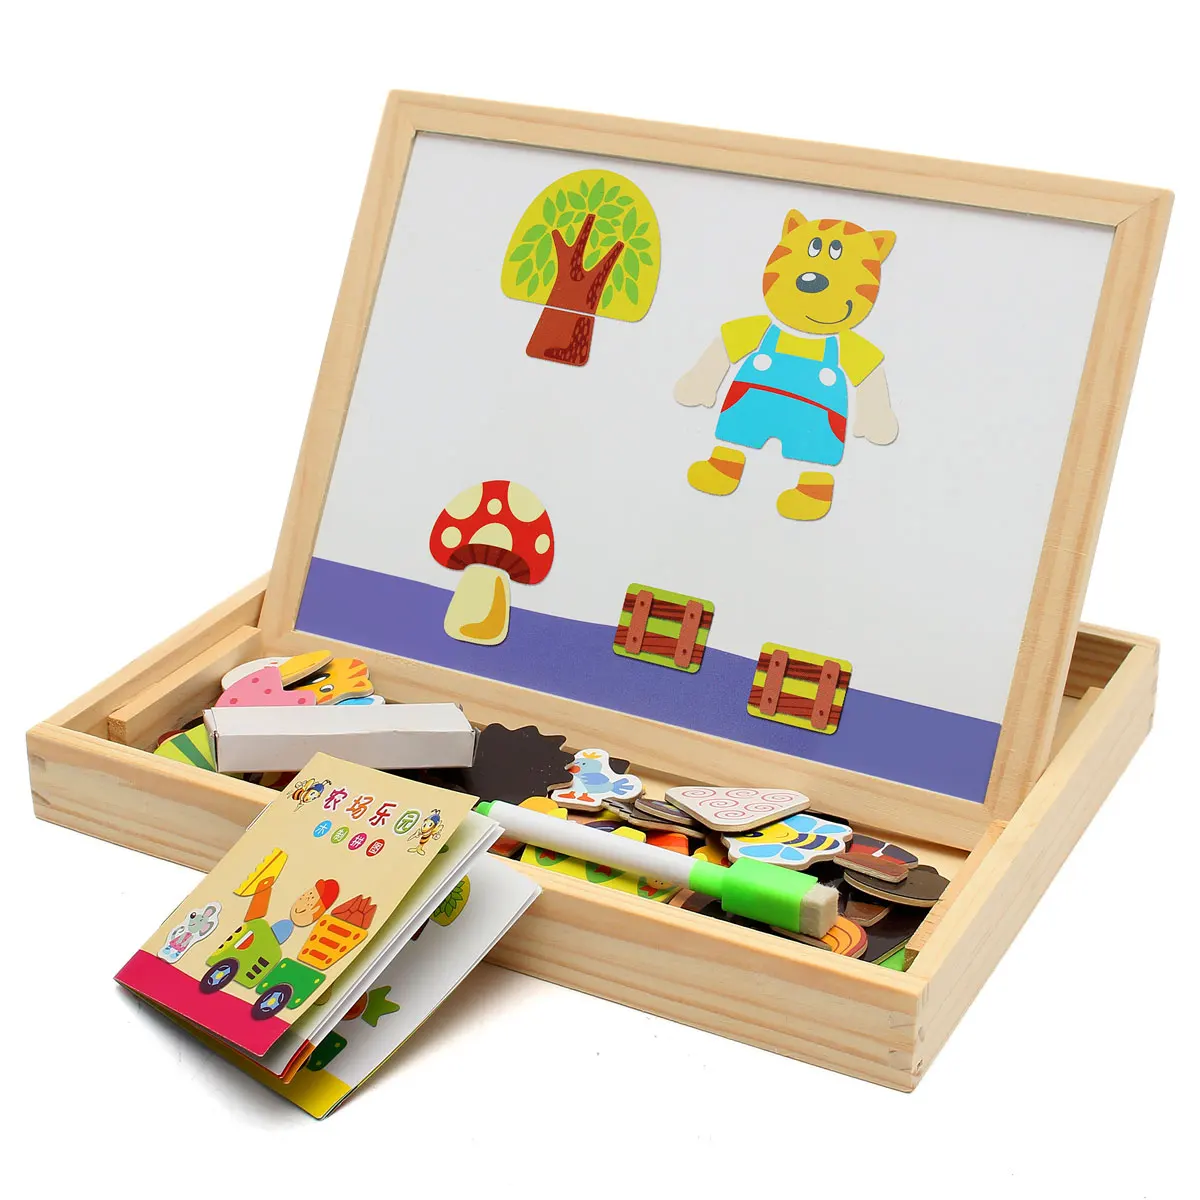 Новое поступление, доска для рисования, магнитная доска, головоломка, двойной мольберт, детская деревянная игрушка, подарок, детская развивающая игрушка - Цвет: Зеленый